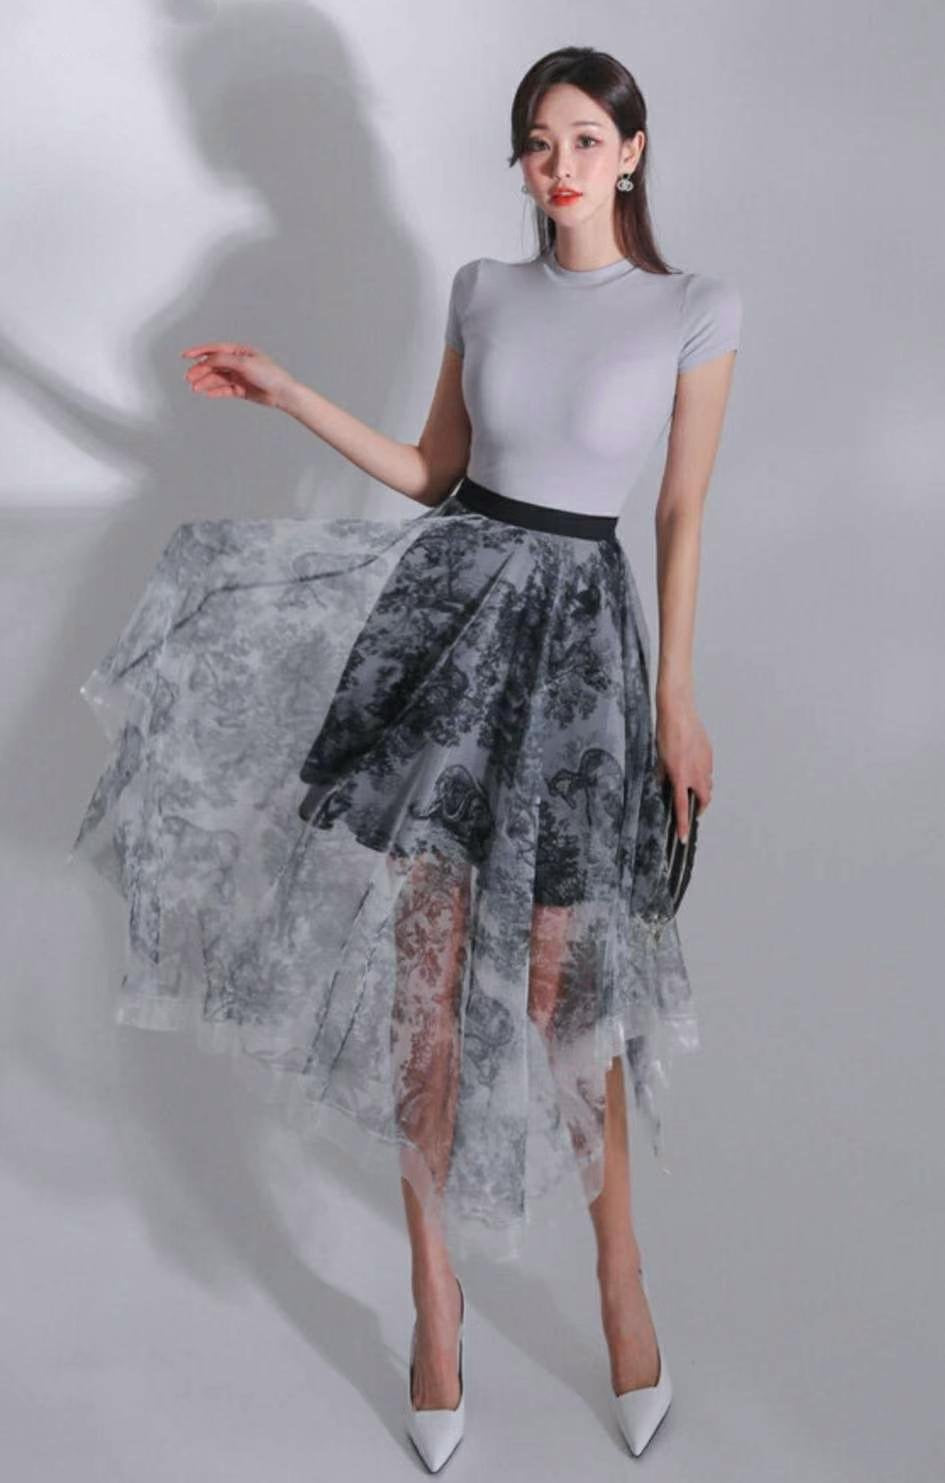 LV675 skirt